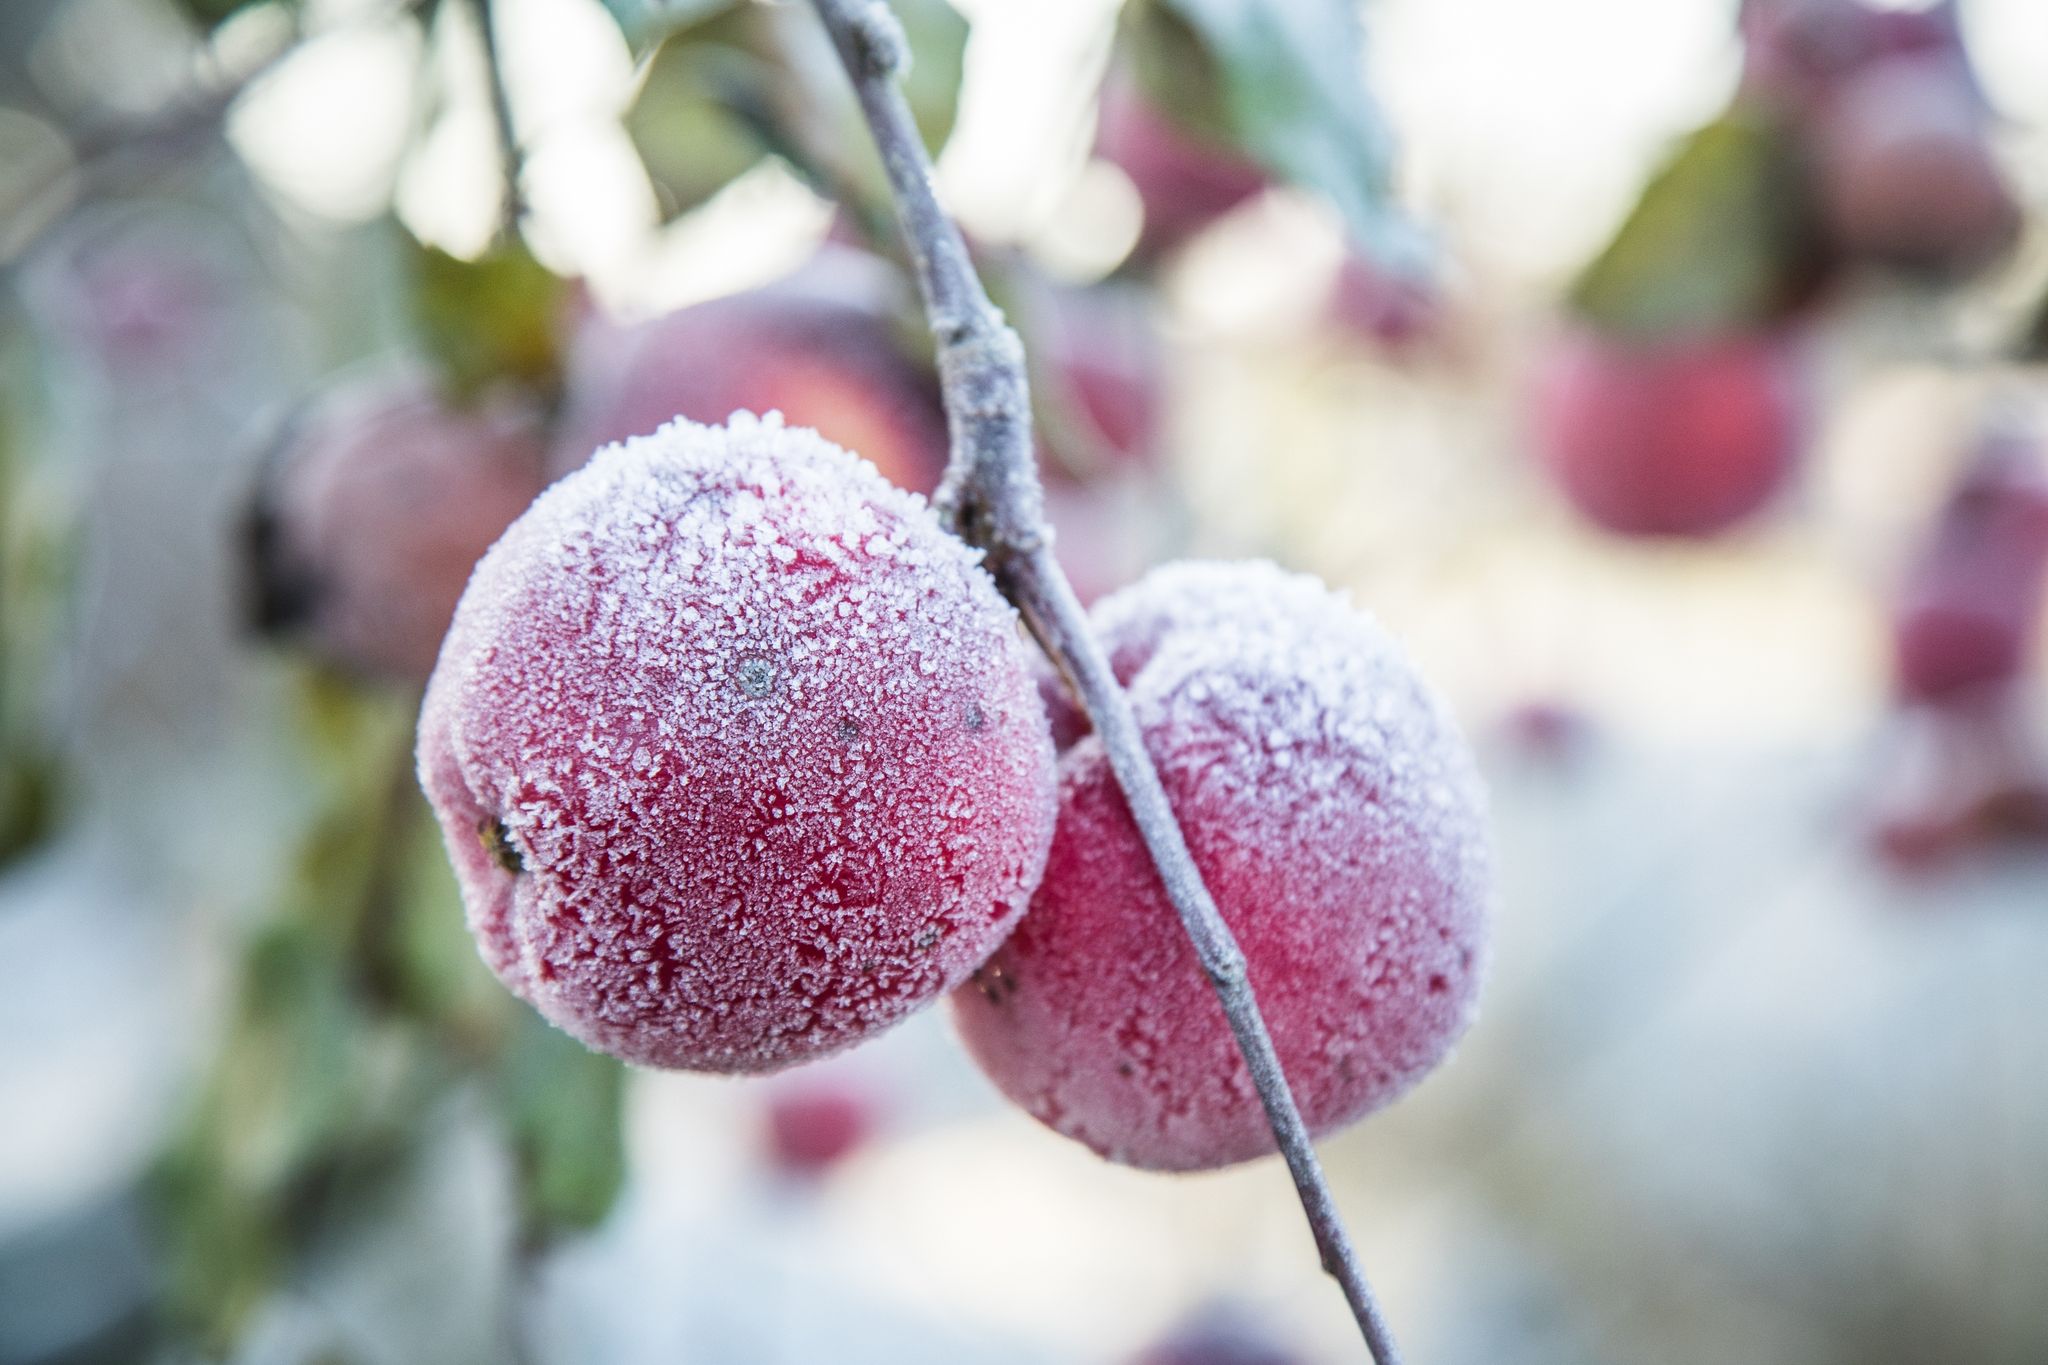 Der erste Frost kommt oft unerwartet, besser man schützt die Obstbäume auf dem Balkon rechtzeitig.